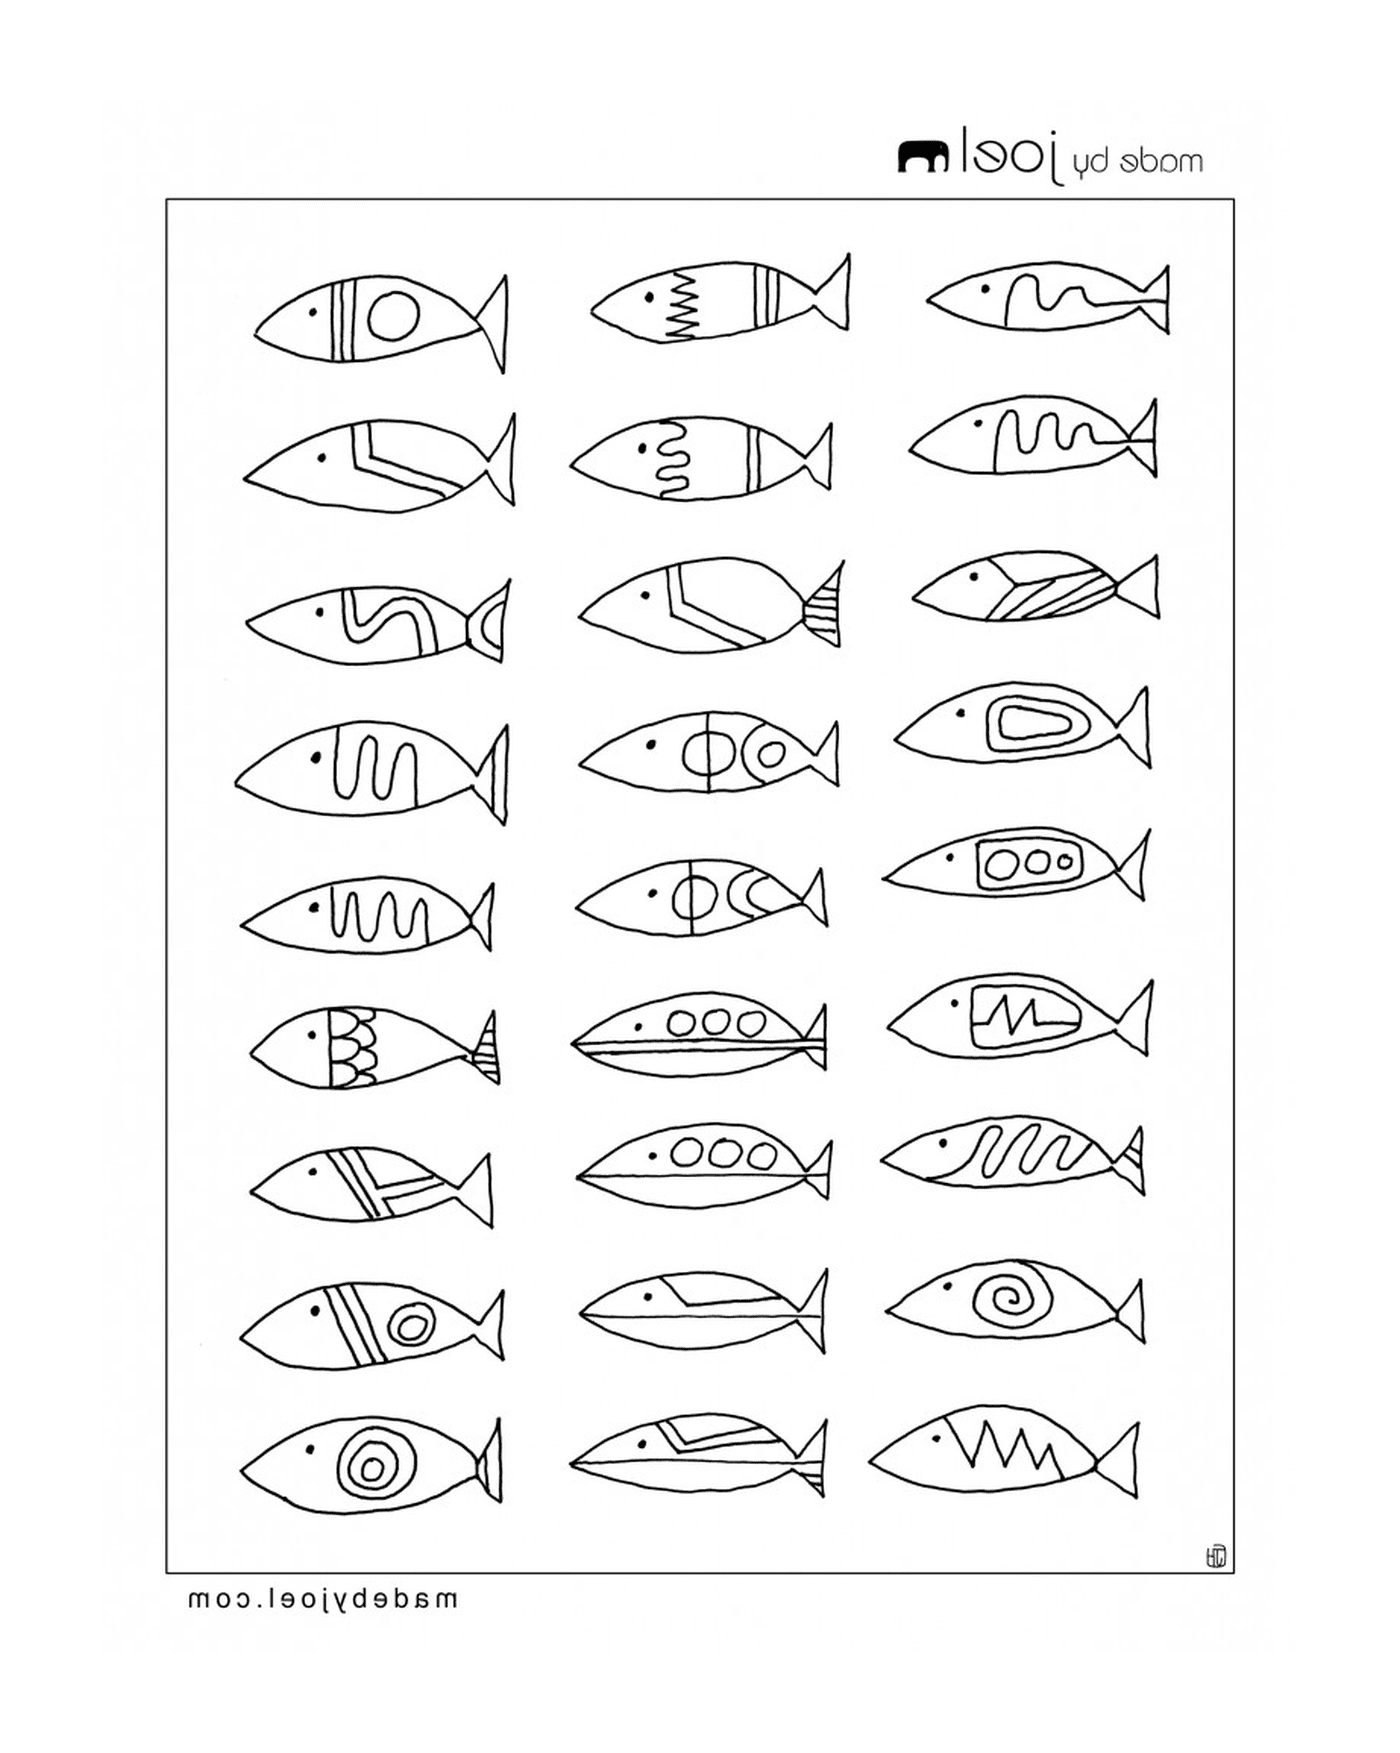  Разные виды рыбы на этой странице 